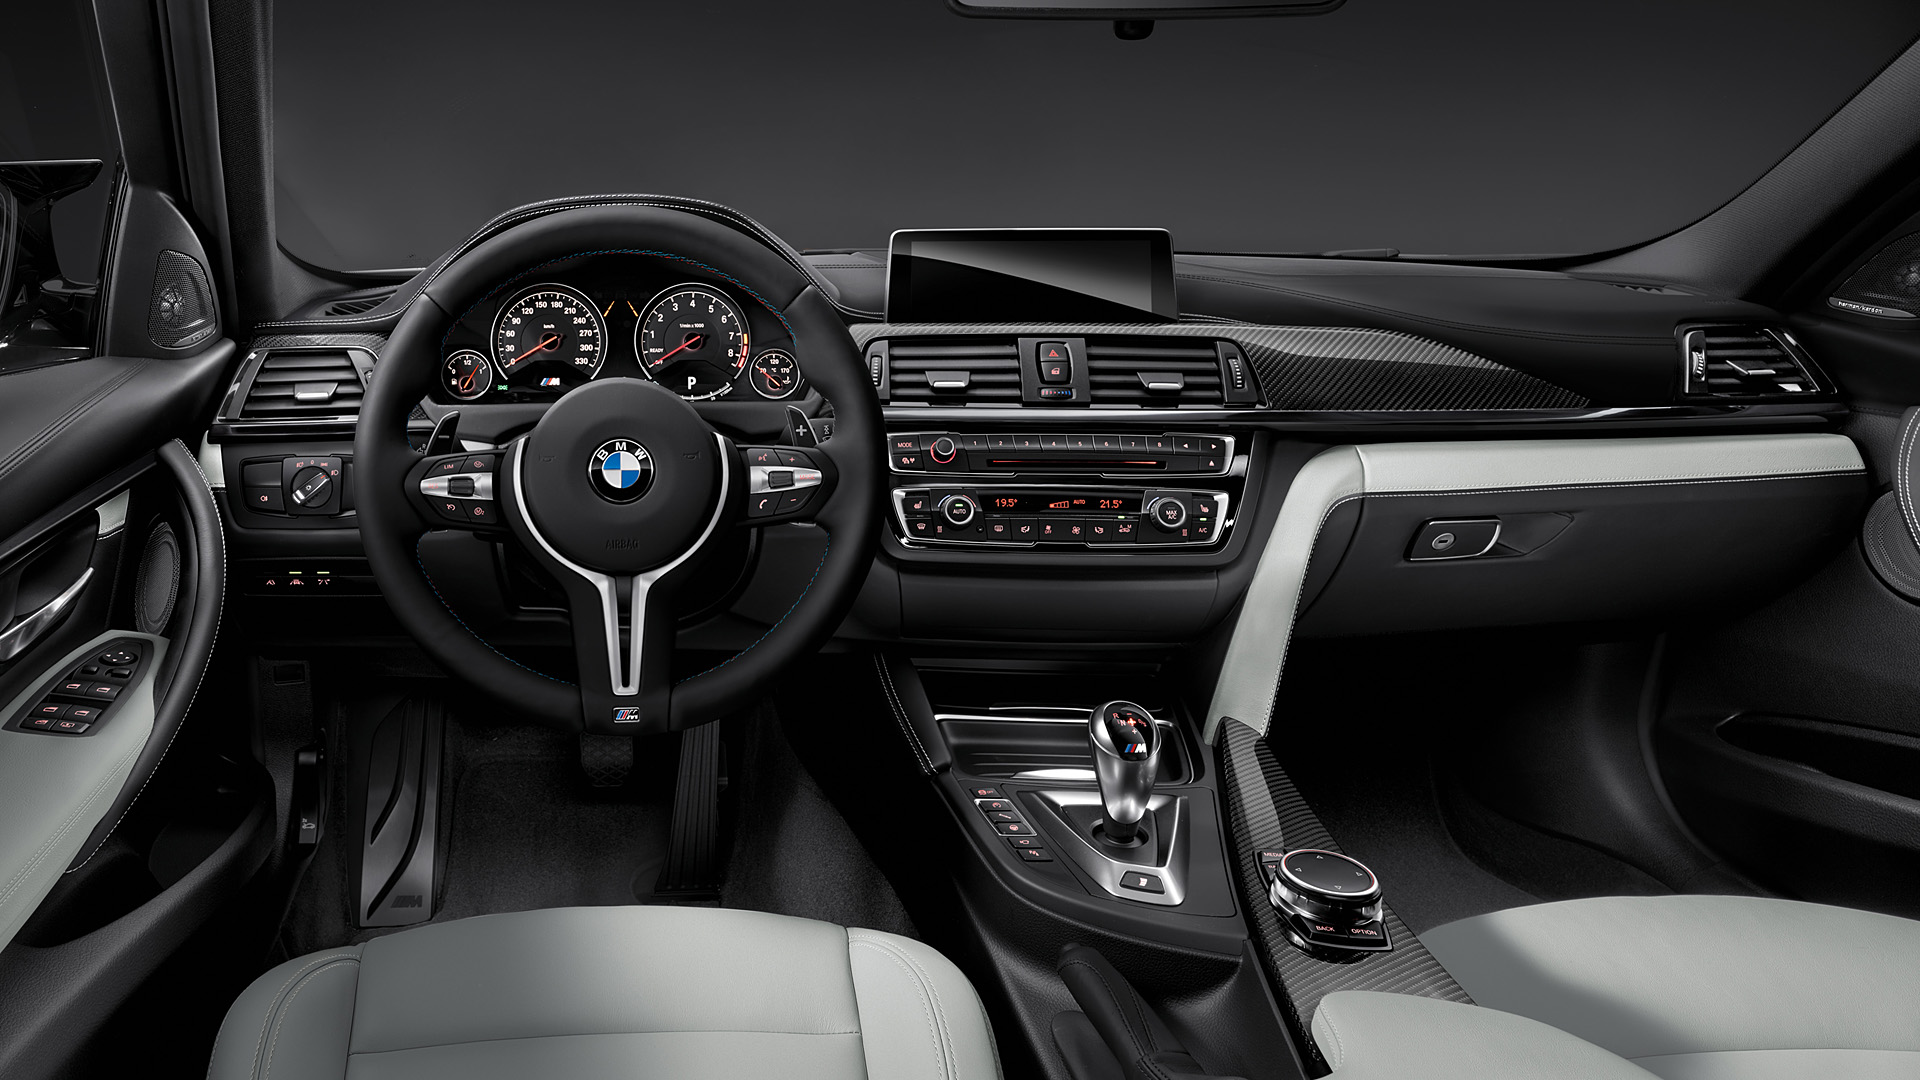  2015 BMW M3 Sedan Wallpaper.